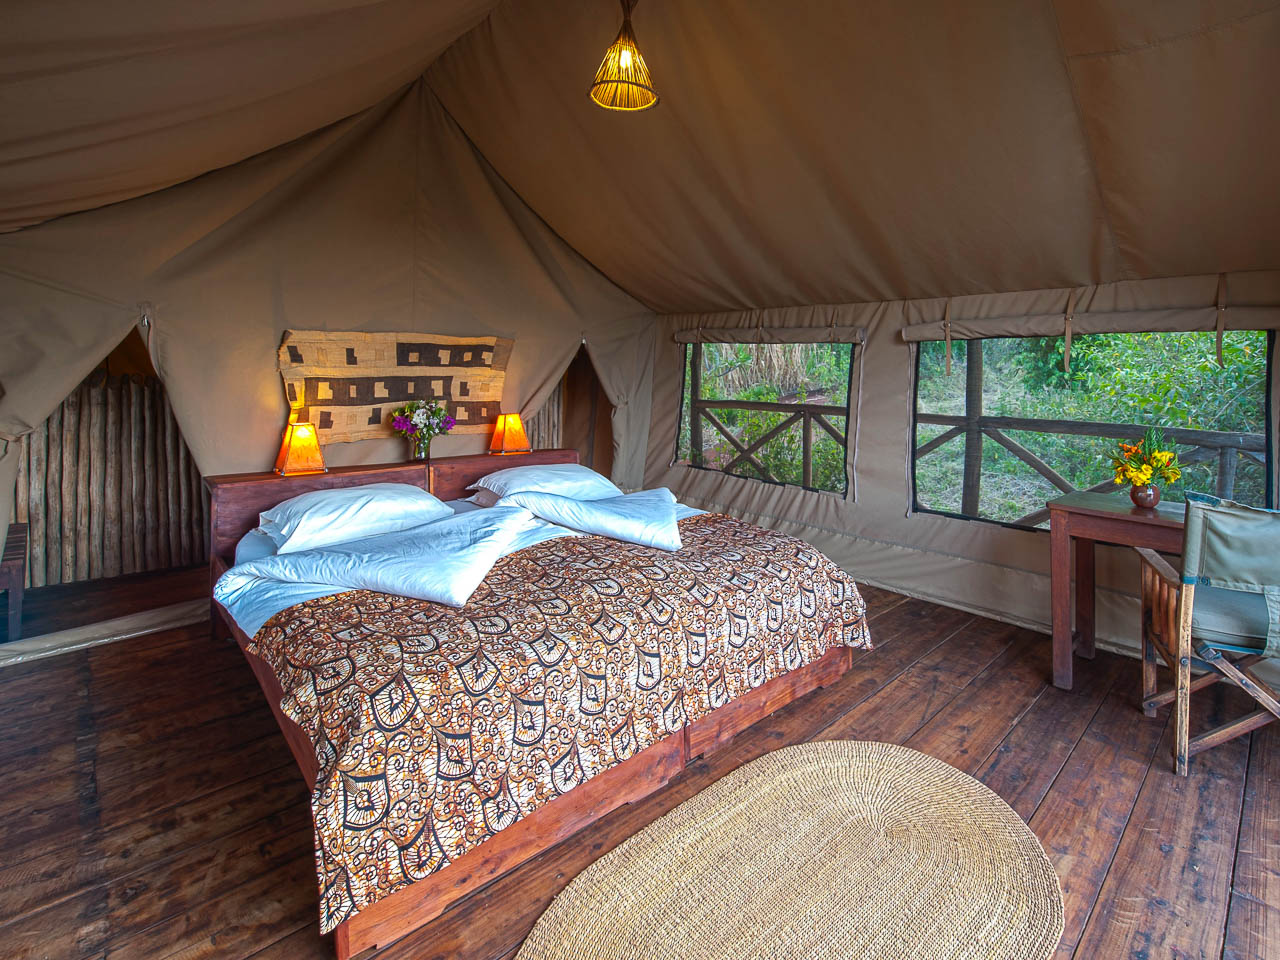 Tanzania safari. Accommodaties. Luxe accommodatie in twee persoons canvas tent met veel authentieke Tanzaniaanse materialen van hout en riet. De tent staat op een houten vloer op palen. In het midden is er een mooi opgemaakt bed.